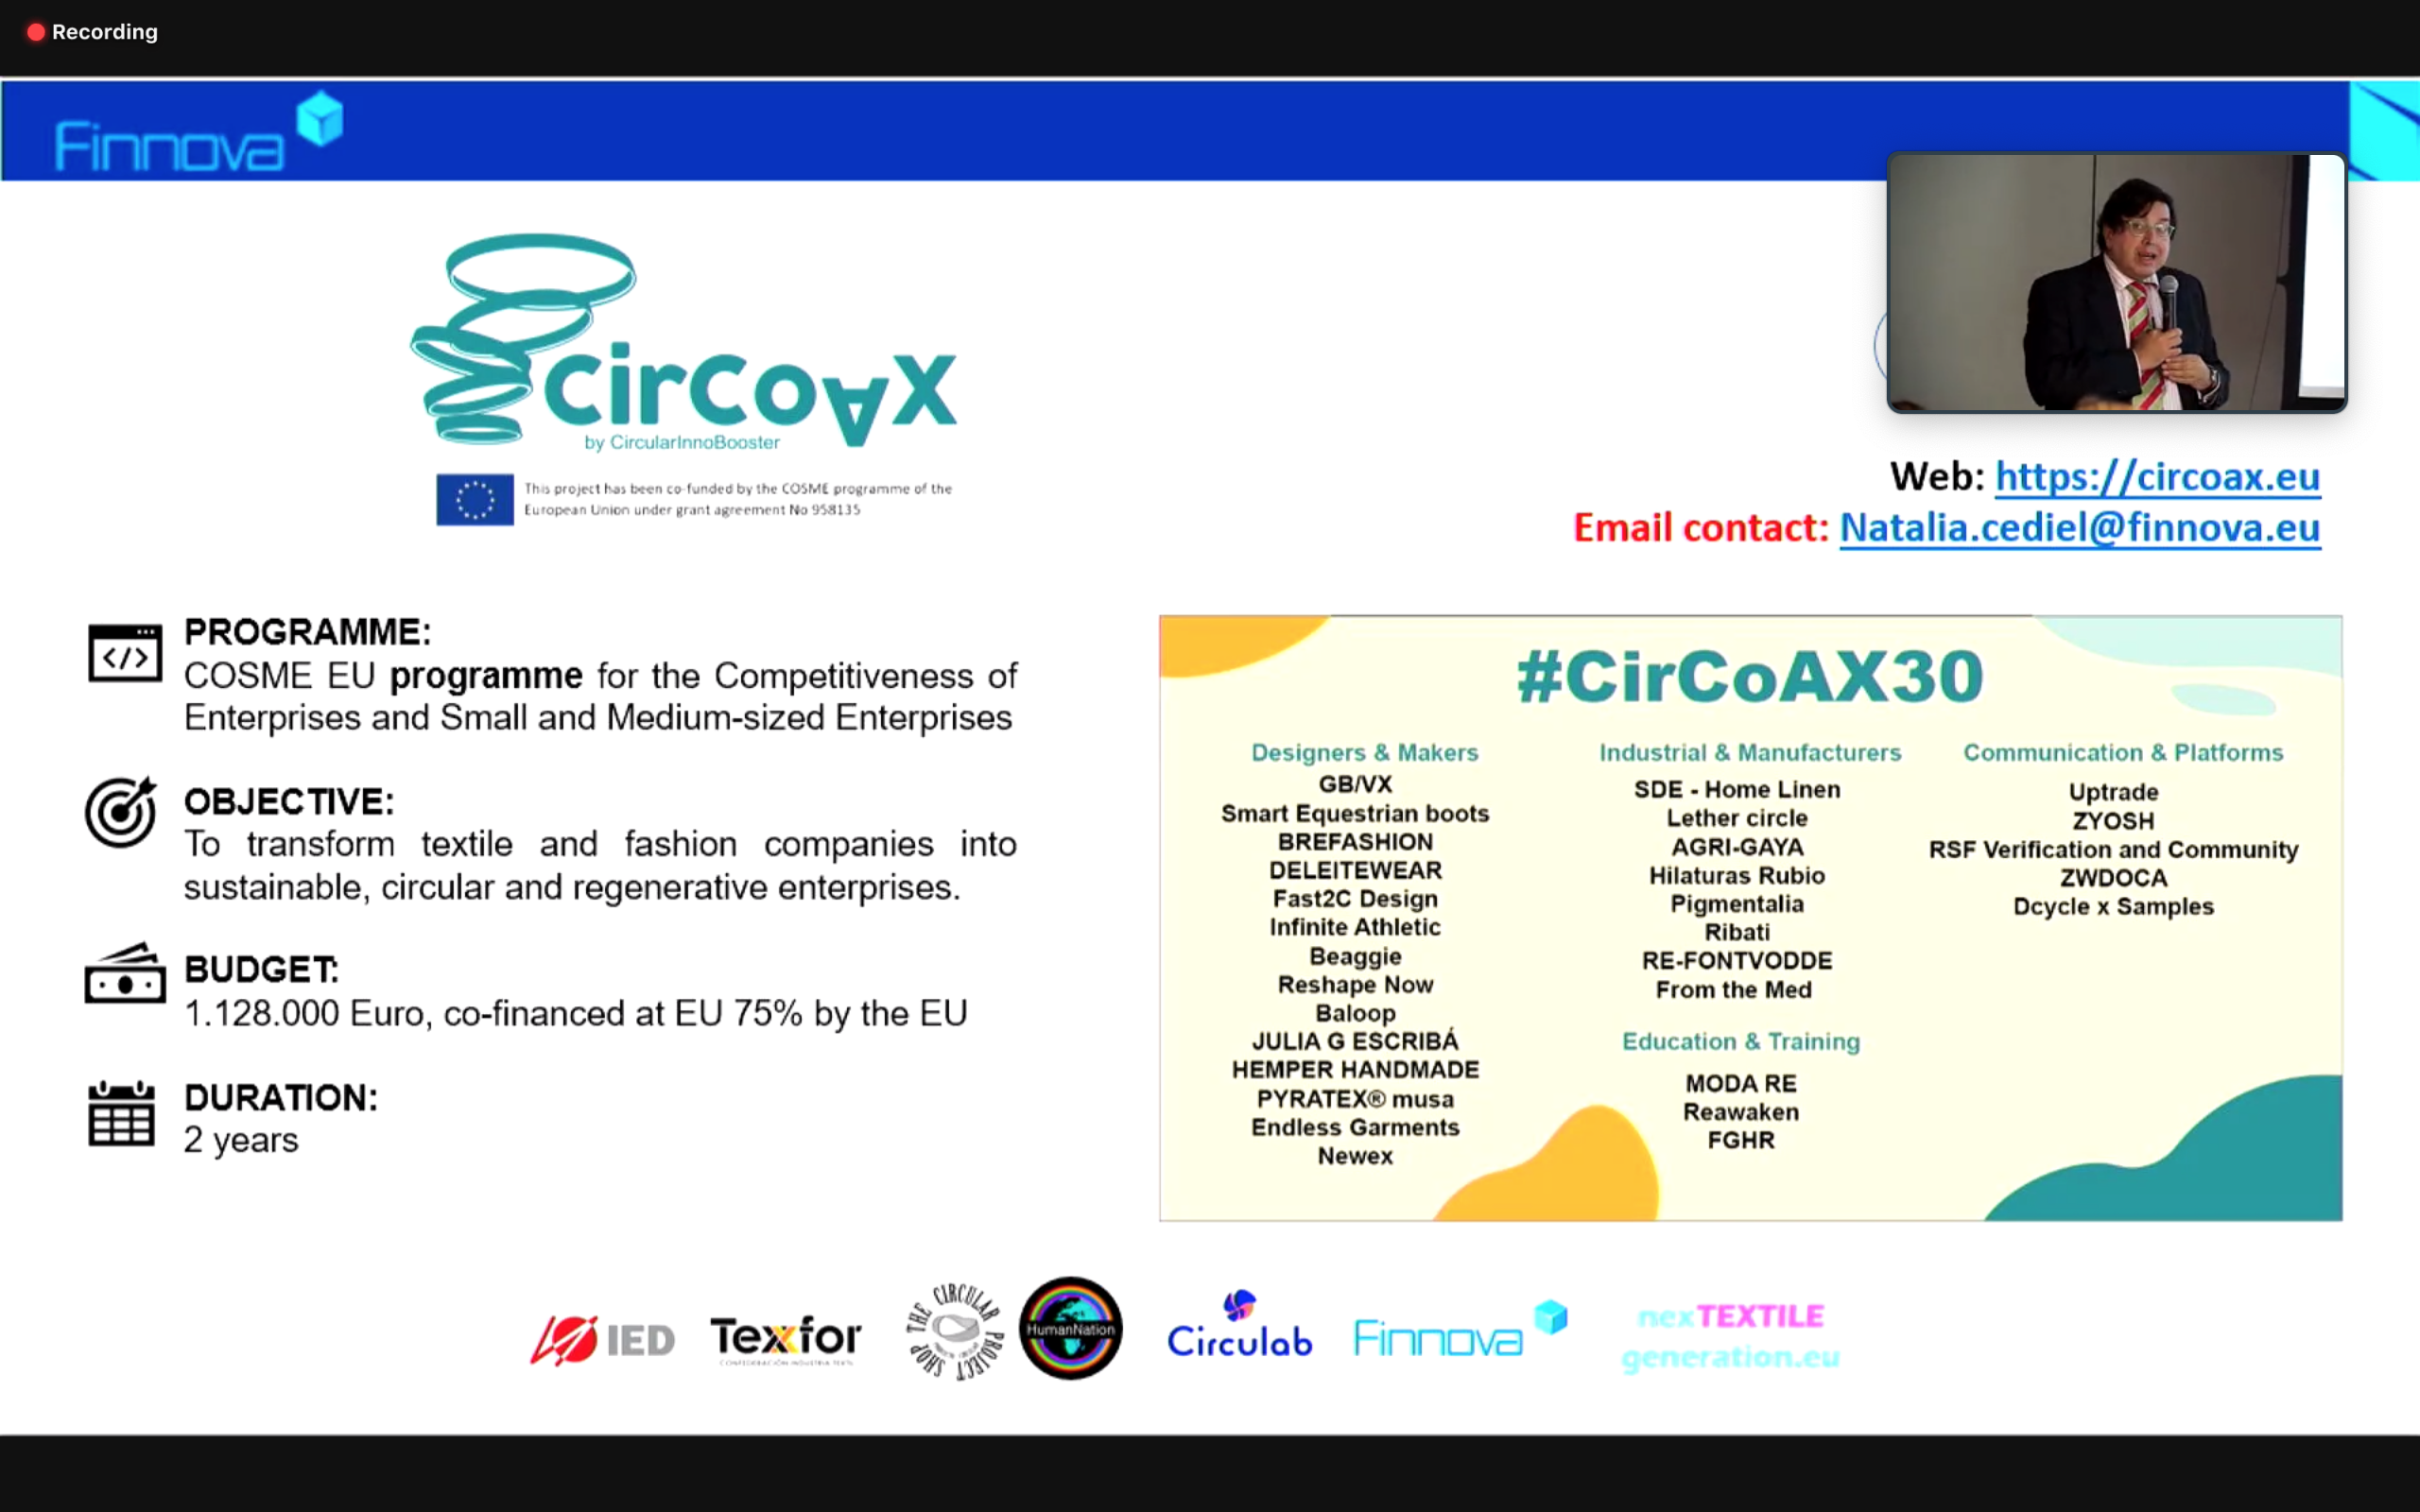 CirCoAx by CircularInnoBooster, ejemplo de buenas prácticas en la conferencia sobre Sostenibilidad y Economía circular en el sector textil celebrada en Lituania